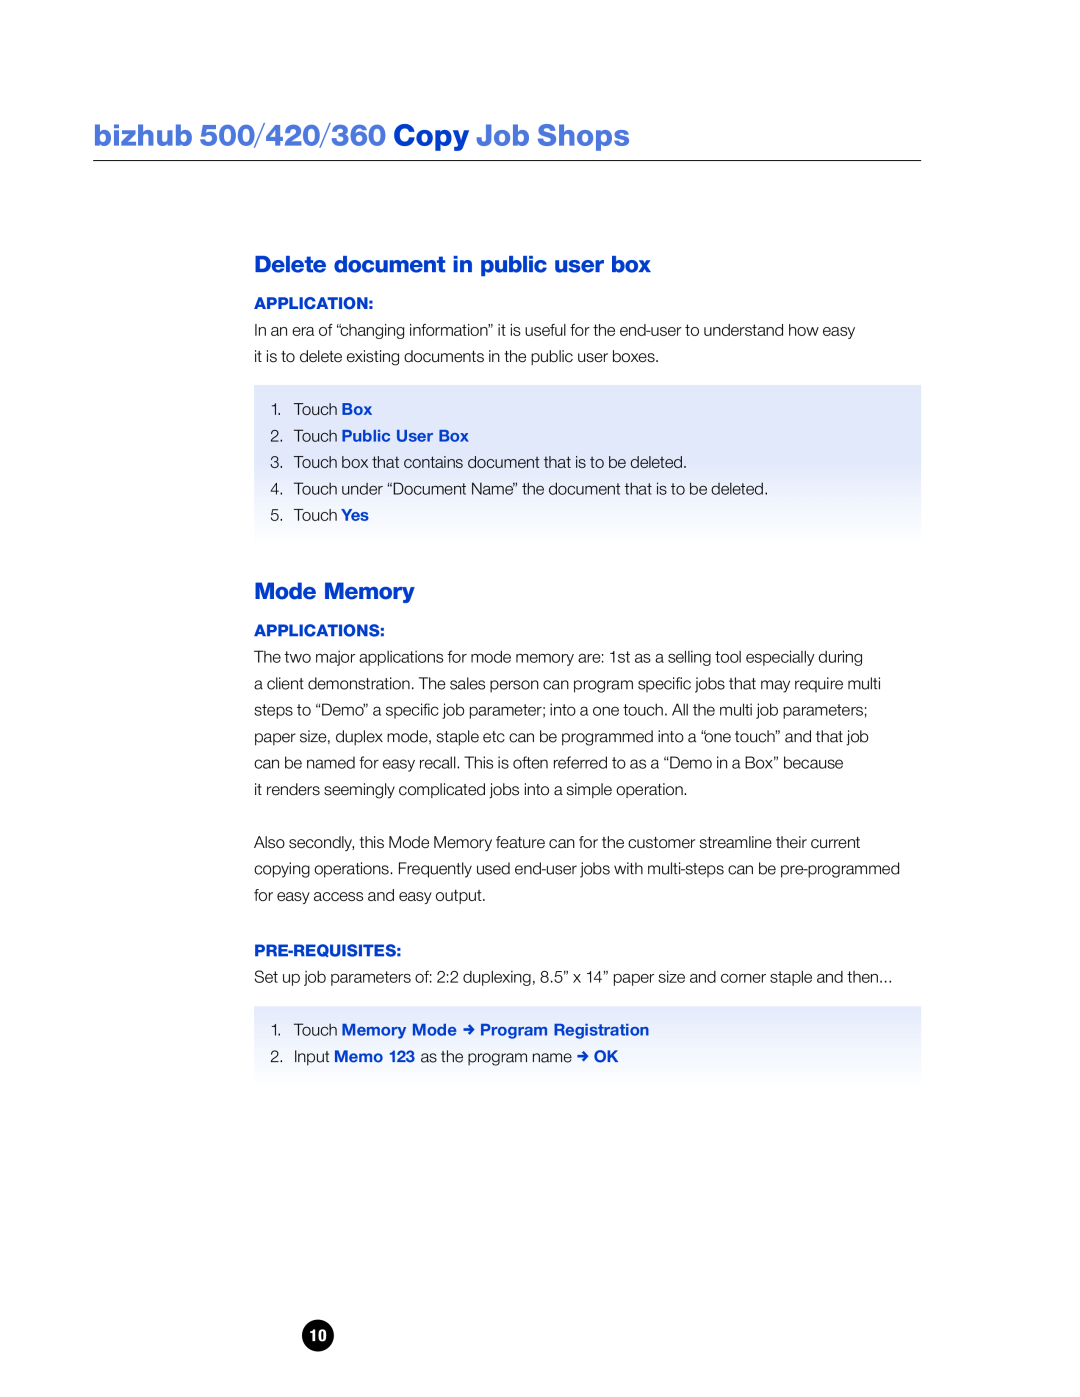 Konica Minolta 360 Delete document in public user box, Mode Memory, Touch Public User Box, Applications, Pre-Requisites 